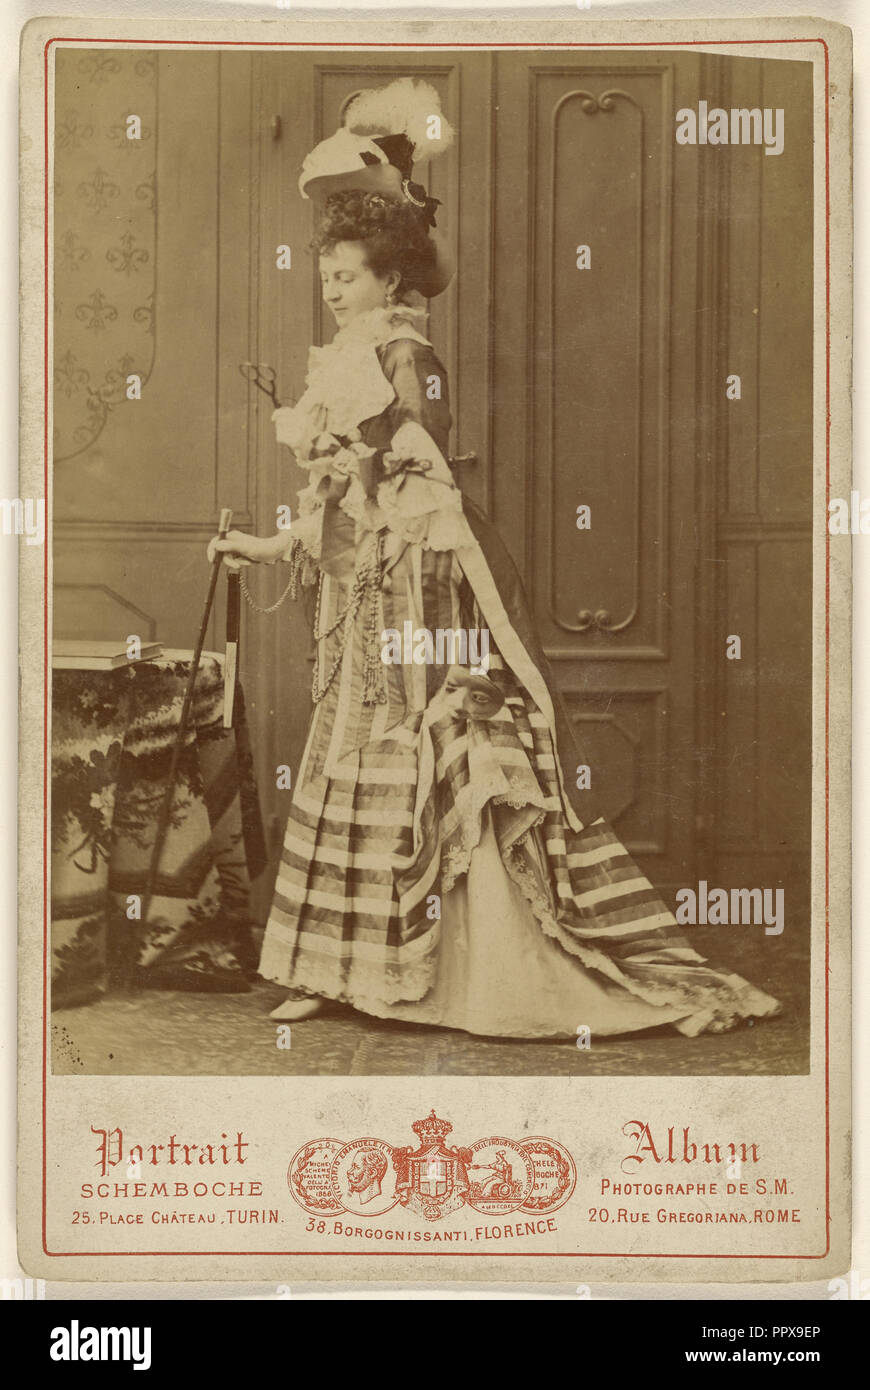 Portrait en pied d'une femme bien-habillés avec bâton de marche ; Michele Schemboche active, Italien, Turin, Florence et Rome Banque D'Images